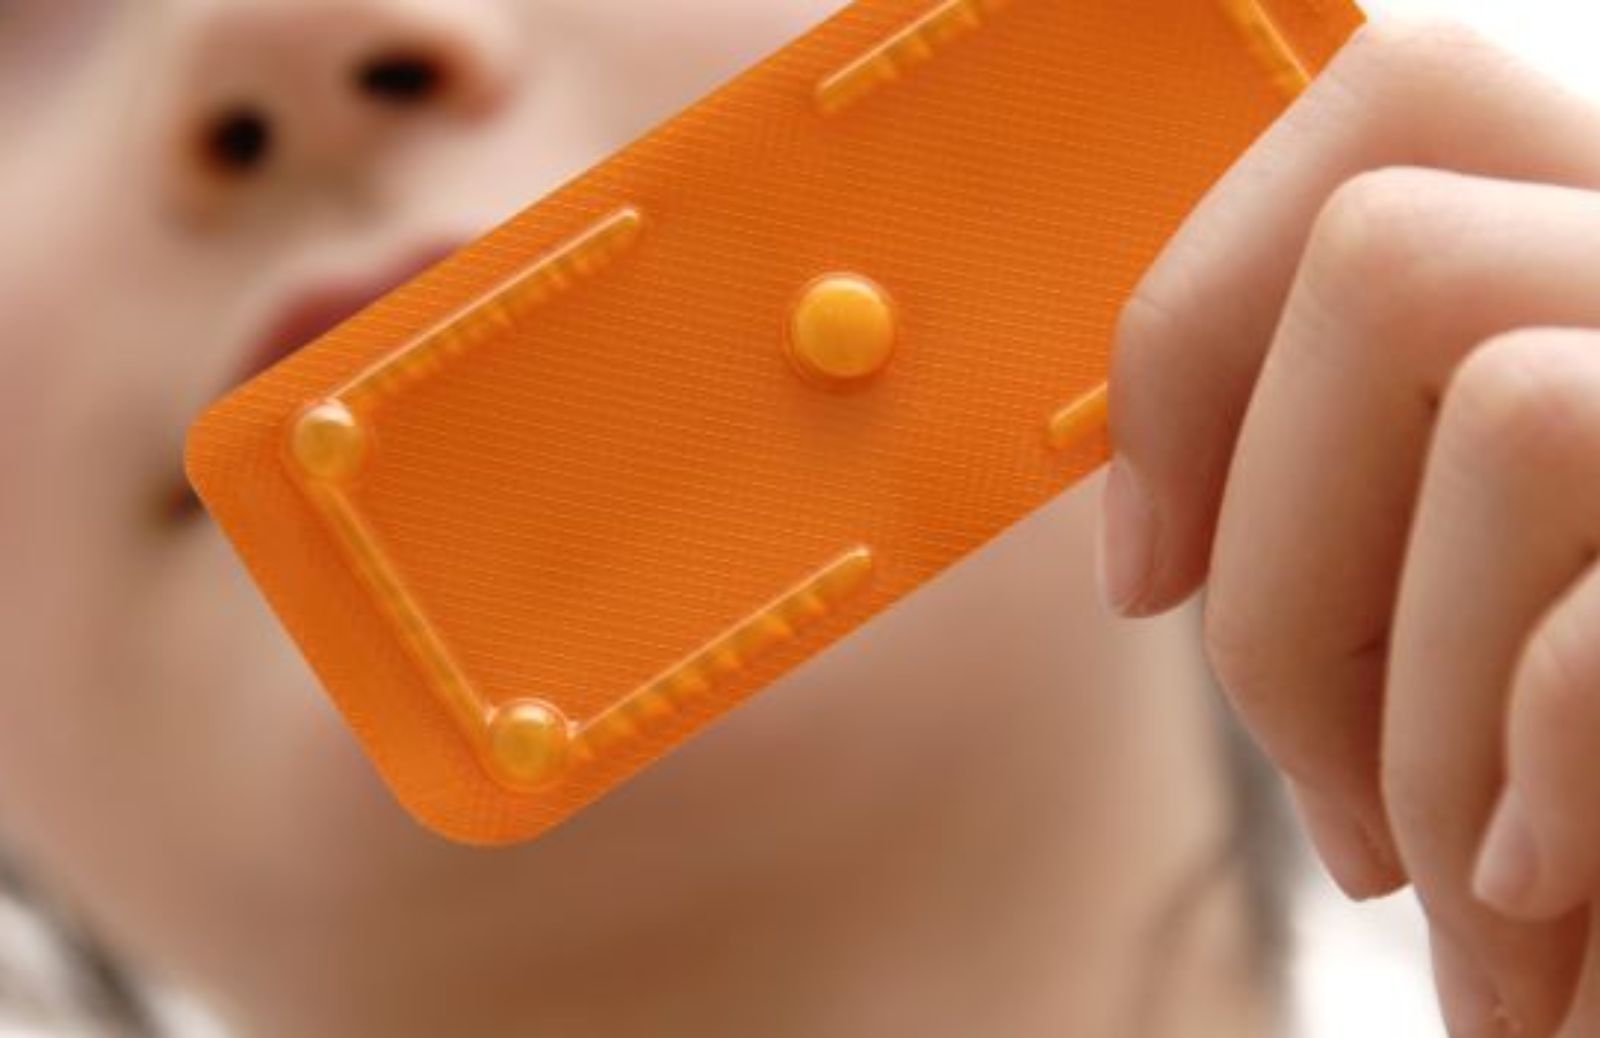 La pillola del giorno dopo non è un abortivo: come usarla per evitare gravidanze indesiderate